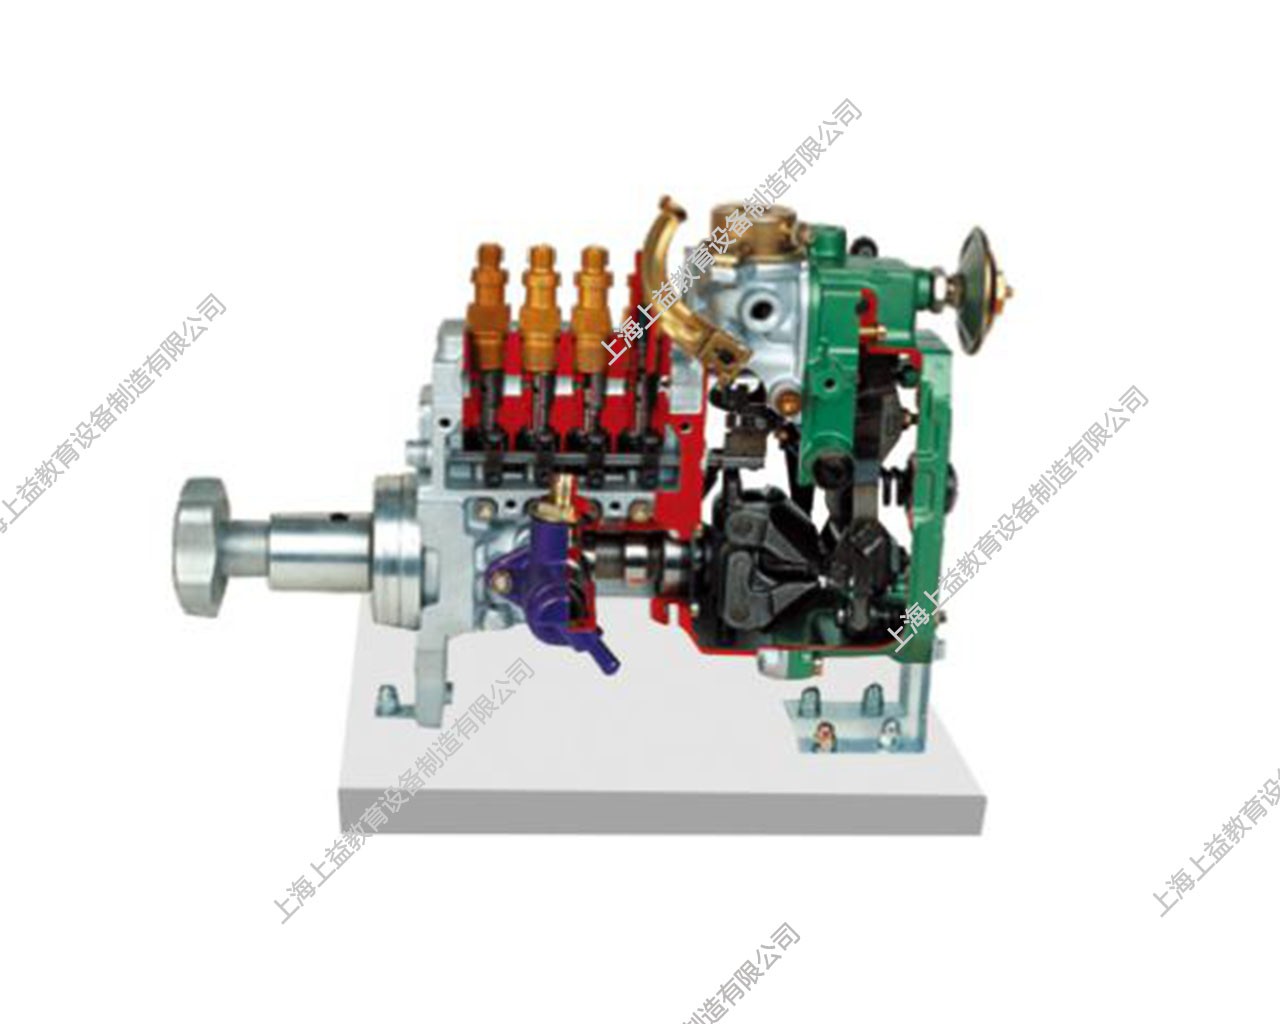 康明斯直列式喷油泵解剖模型(RSV)